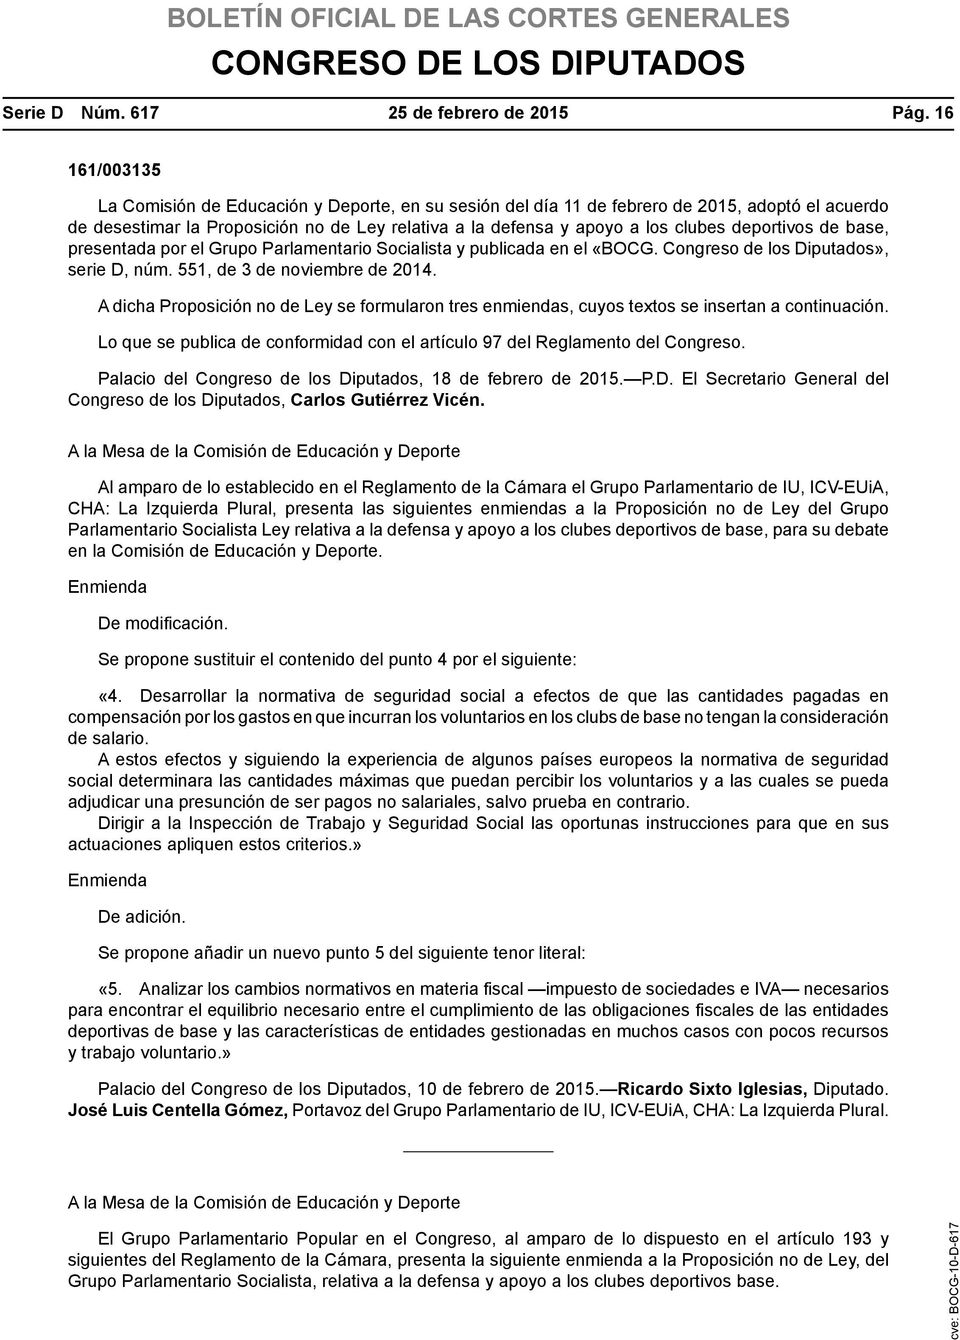 deportivos de base, presentada por el Grupo Parlamentario Socialista y publicada en el «BOCG. Congreso de los Diputados», serie D, núm. 551, de 3 de noviembre de 2014.